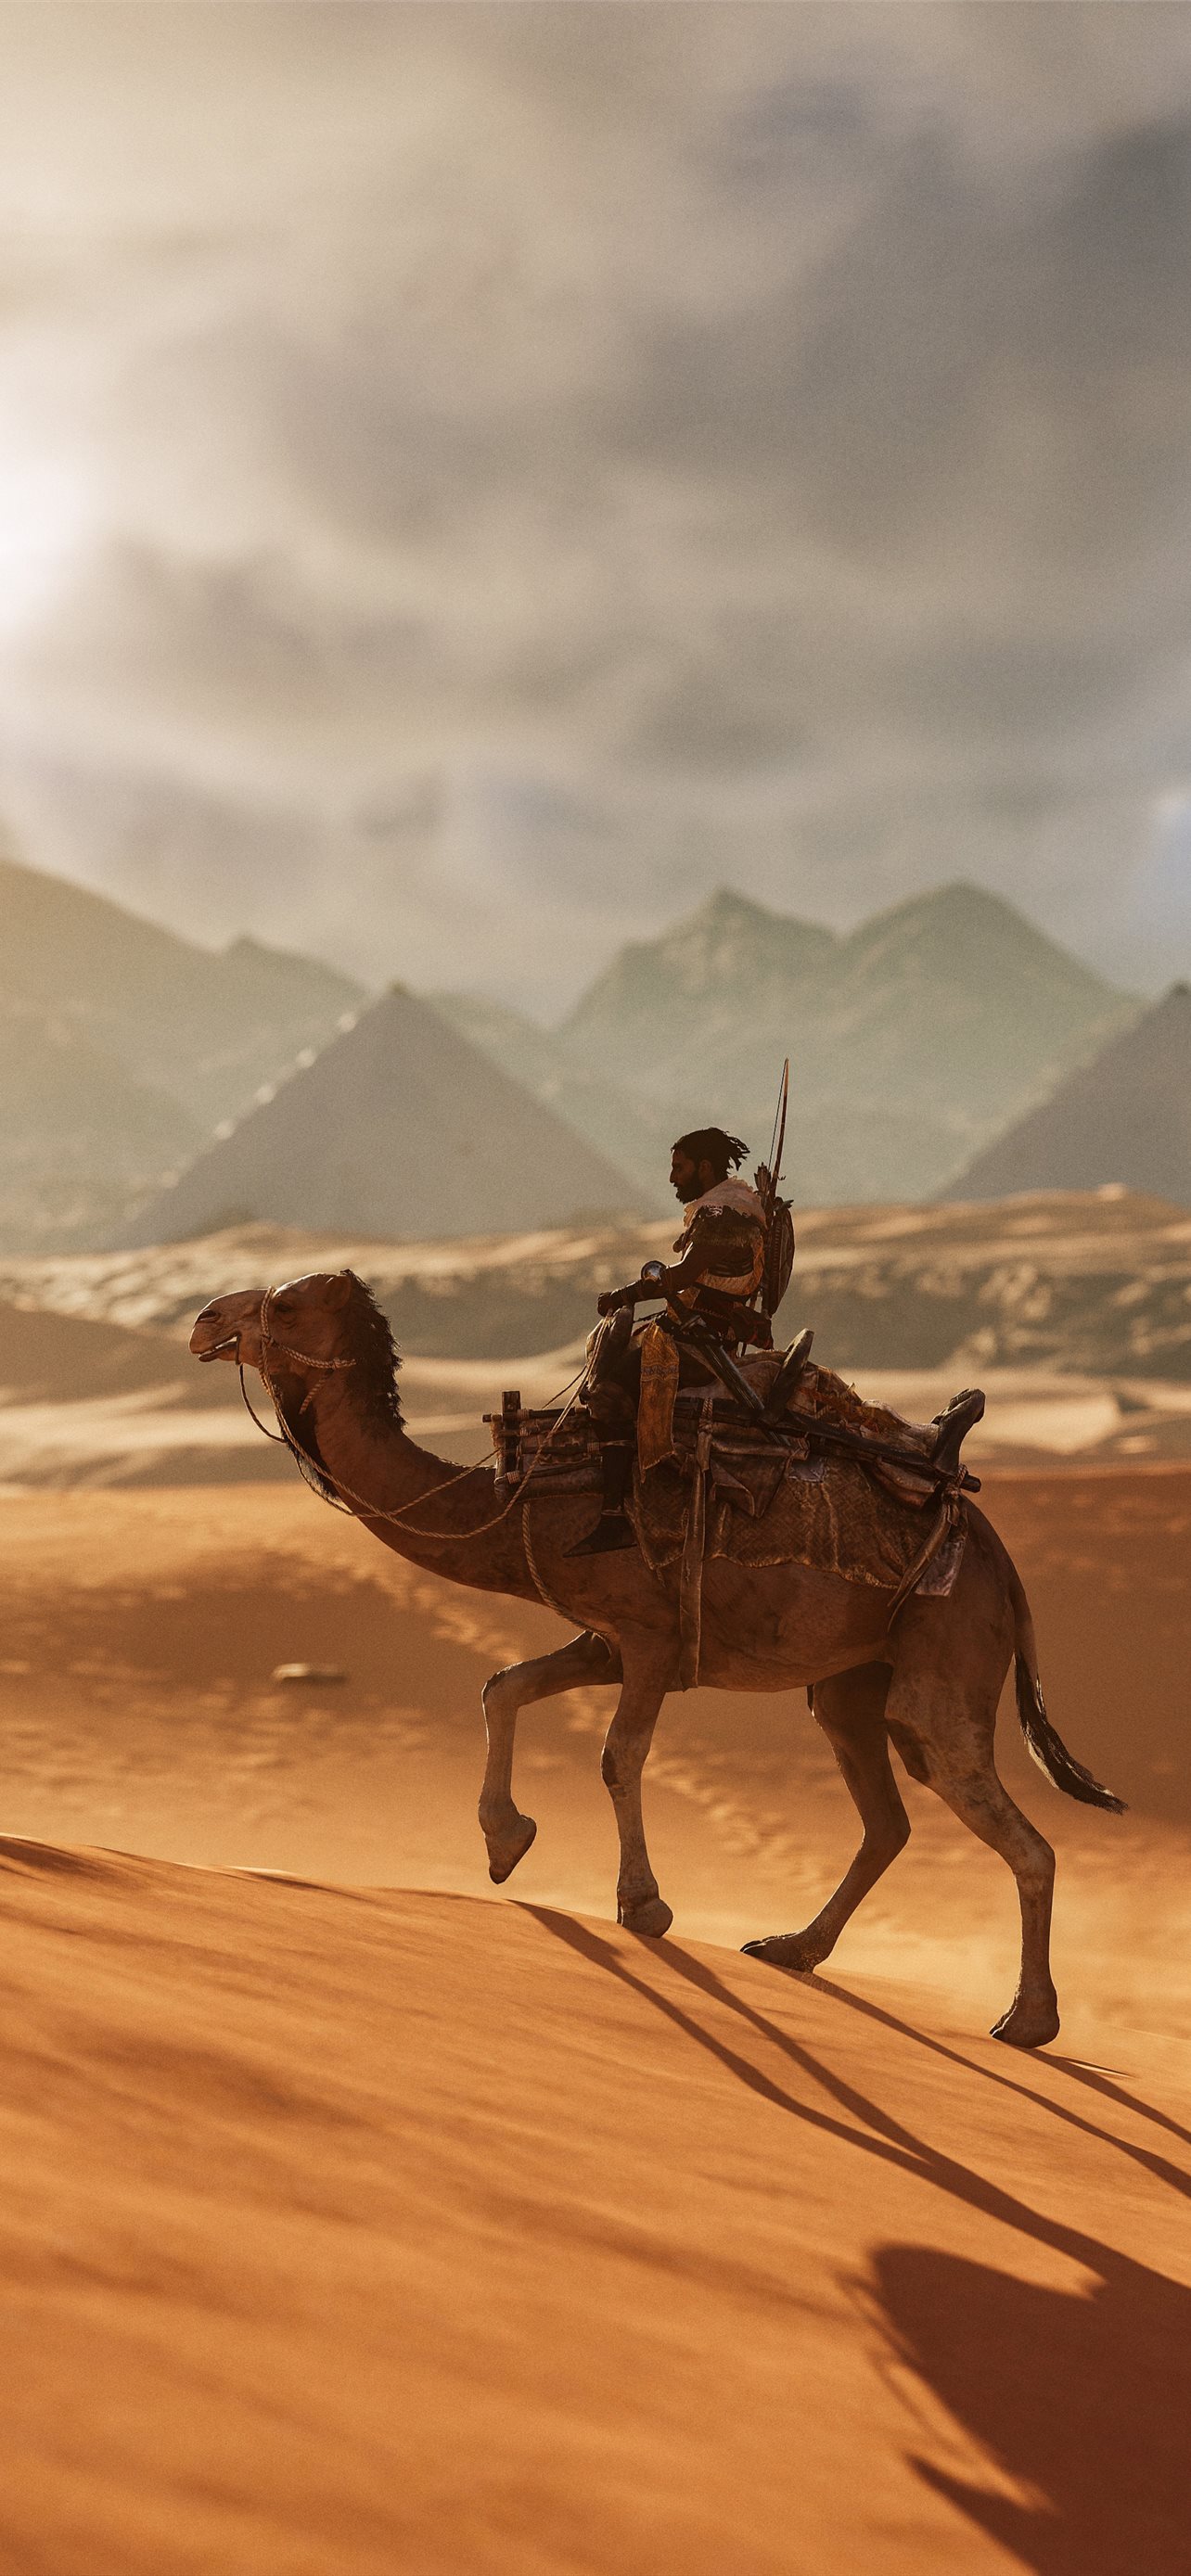 Wallpaper desert camel pyramid images for desktop section животные   download